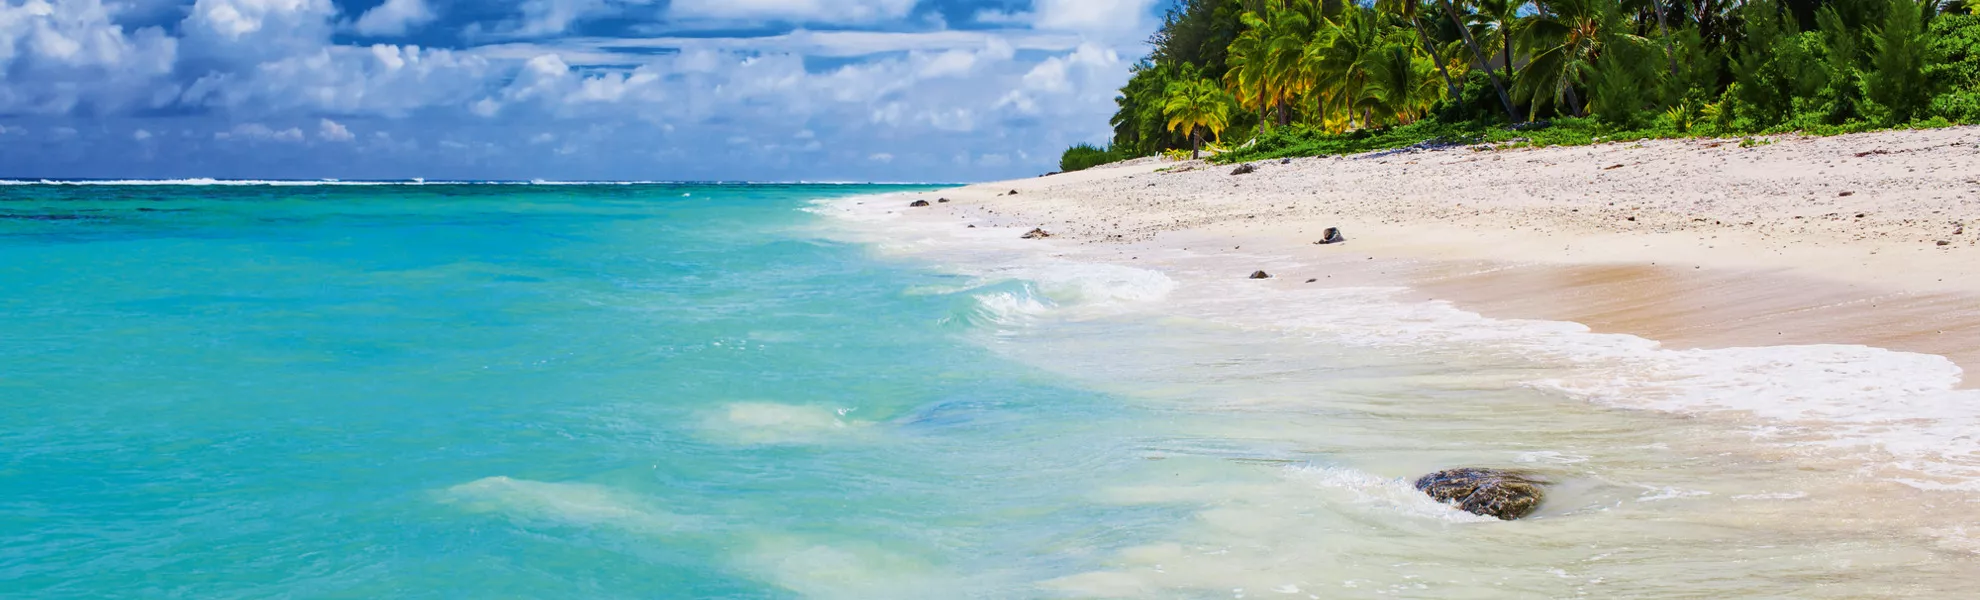 Tropischer Strand mit Felsen,Palmen und erstaunliche Wasser auf Koch - © Martin Valigursky - Fotolia